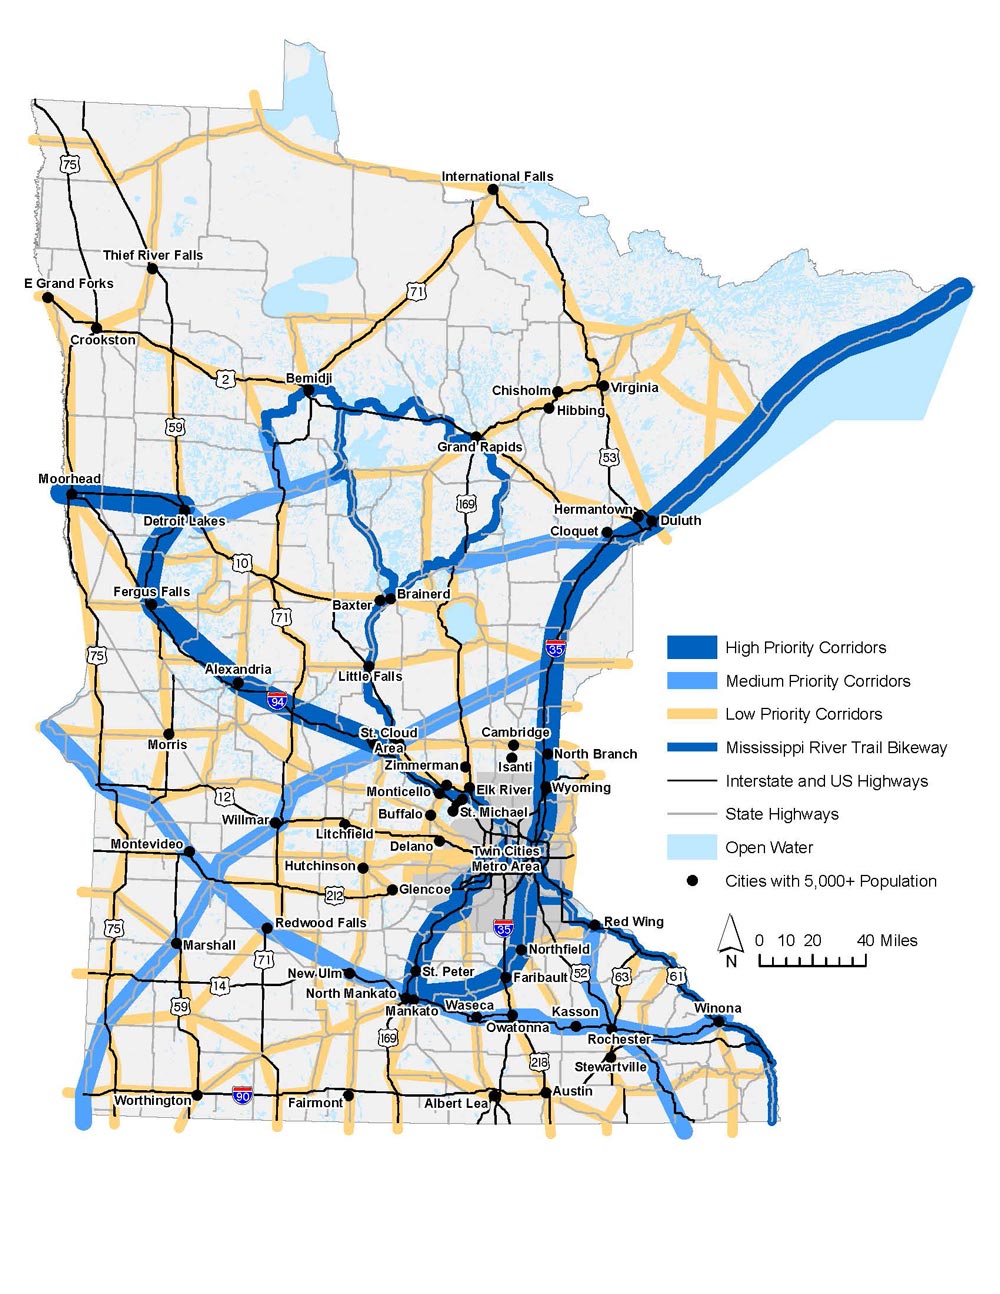 MN state bikeway network priority corridors